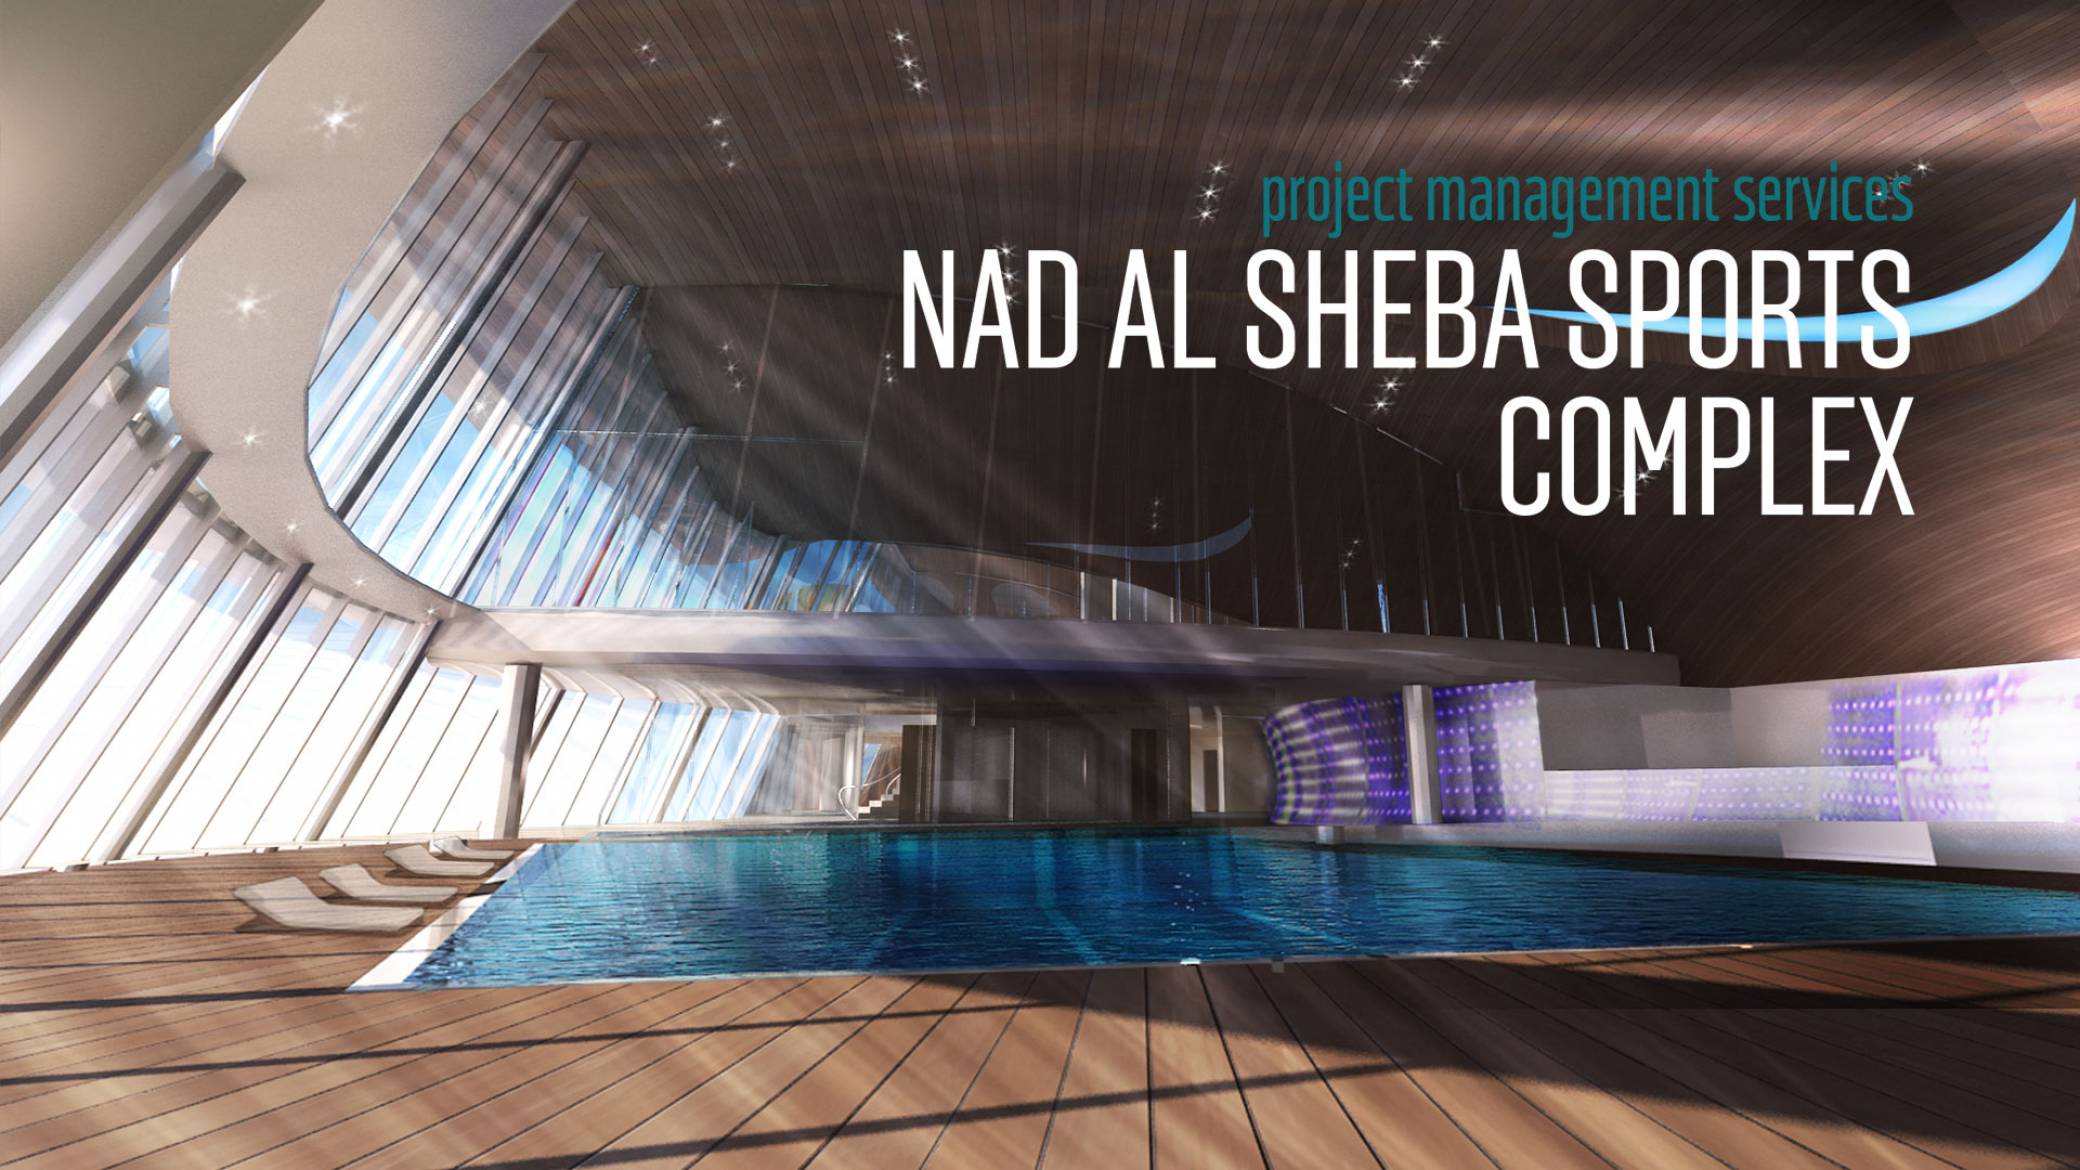 NAD AL SHEBA SPORTS COMPLEX